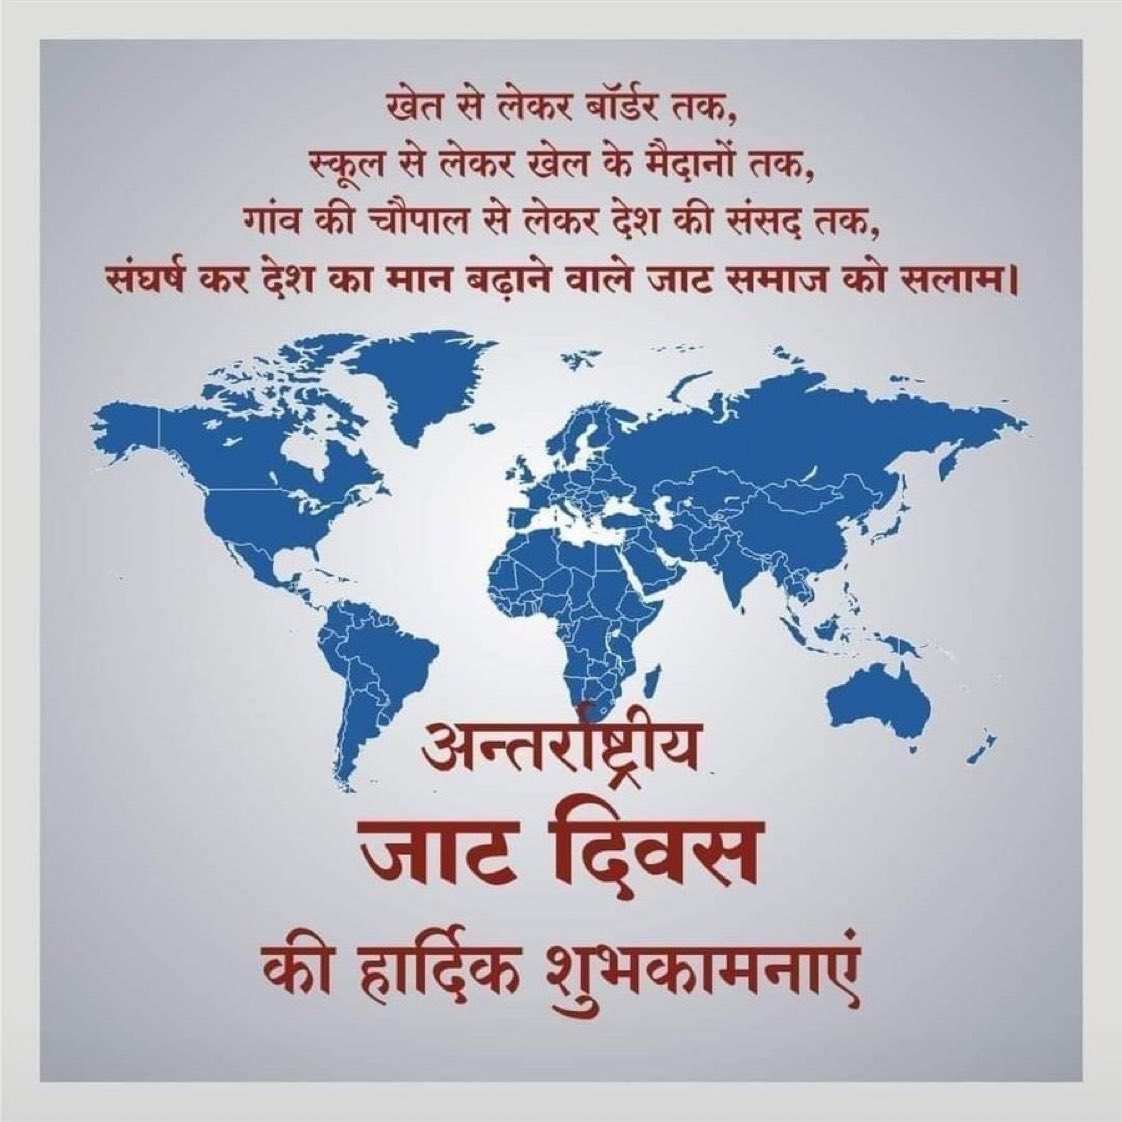 अंतरराष्ट्रिय जाट दिवस की समस्त समाज को हार्दिक बधाई एवं शुभकामनाएँ। 
#JatDiwas 
#अंतराष्ट्रीय_जाट_दिवस